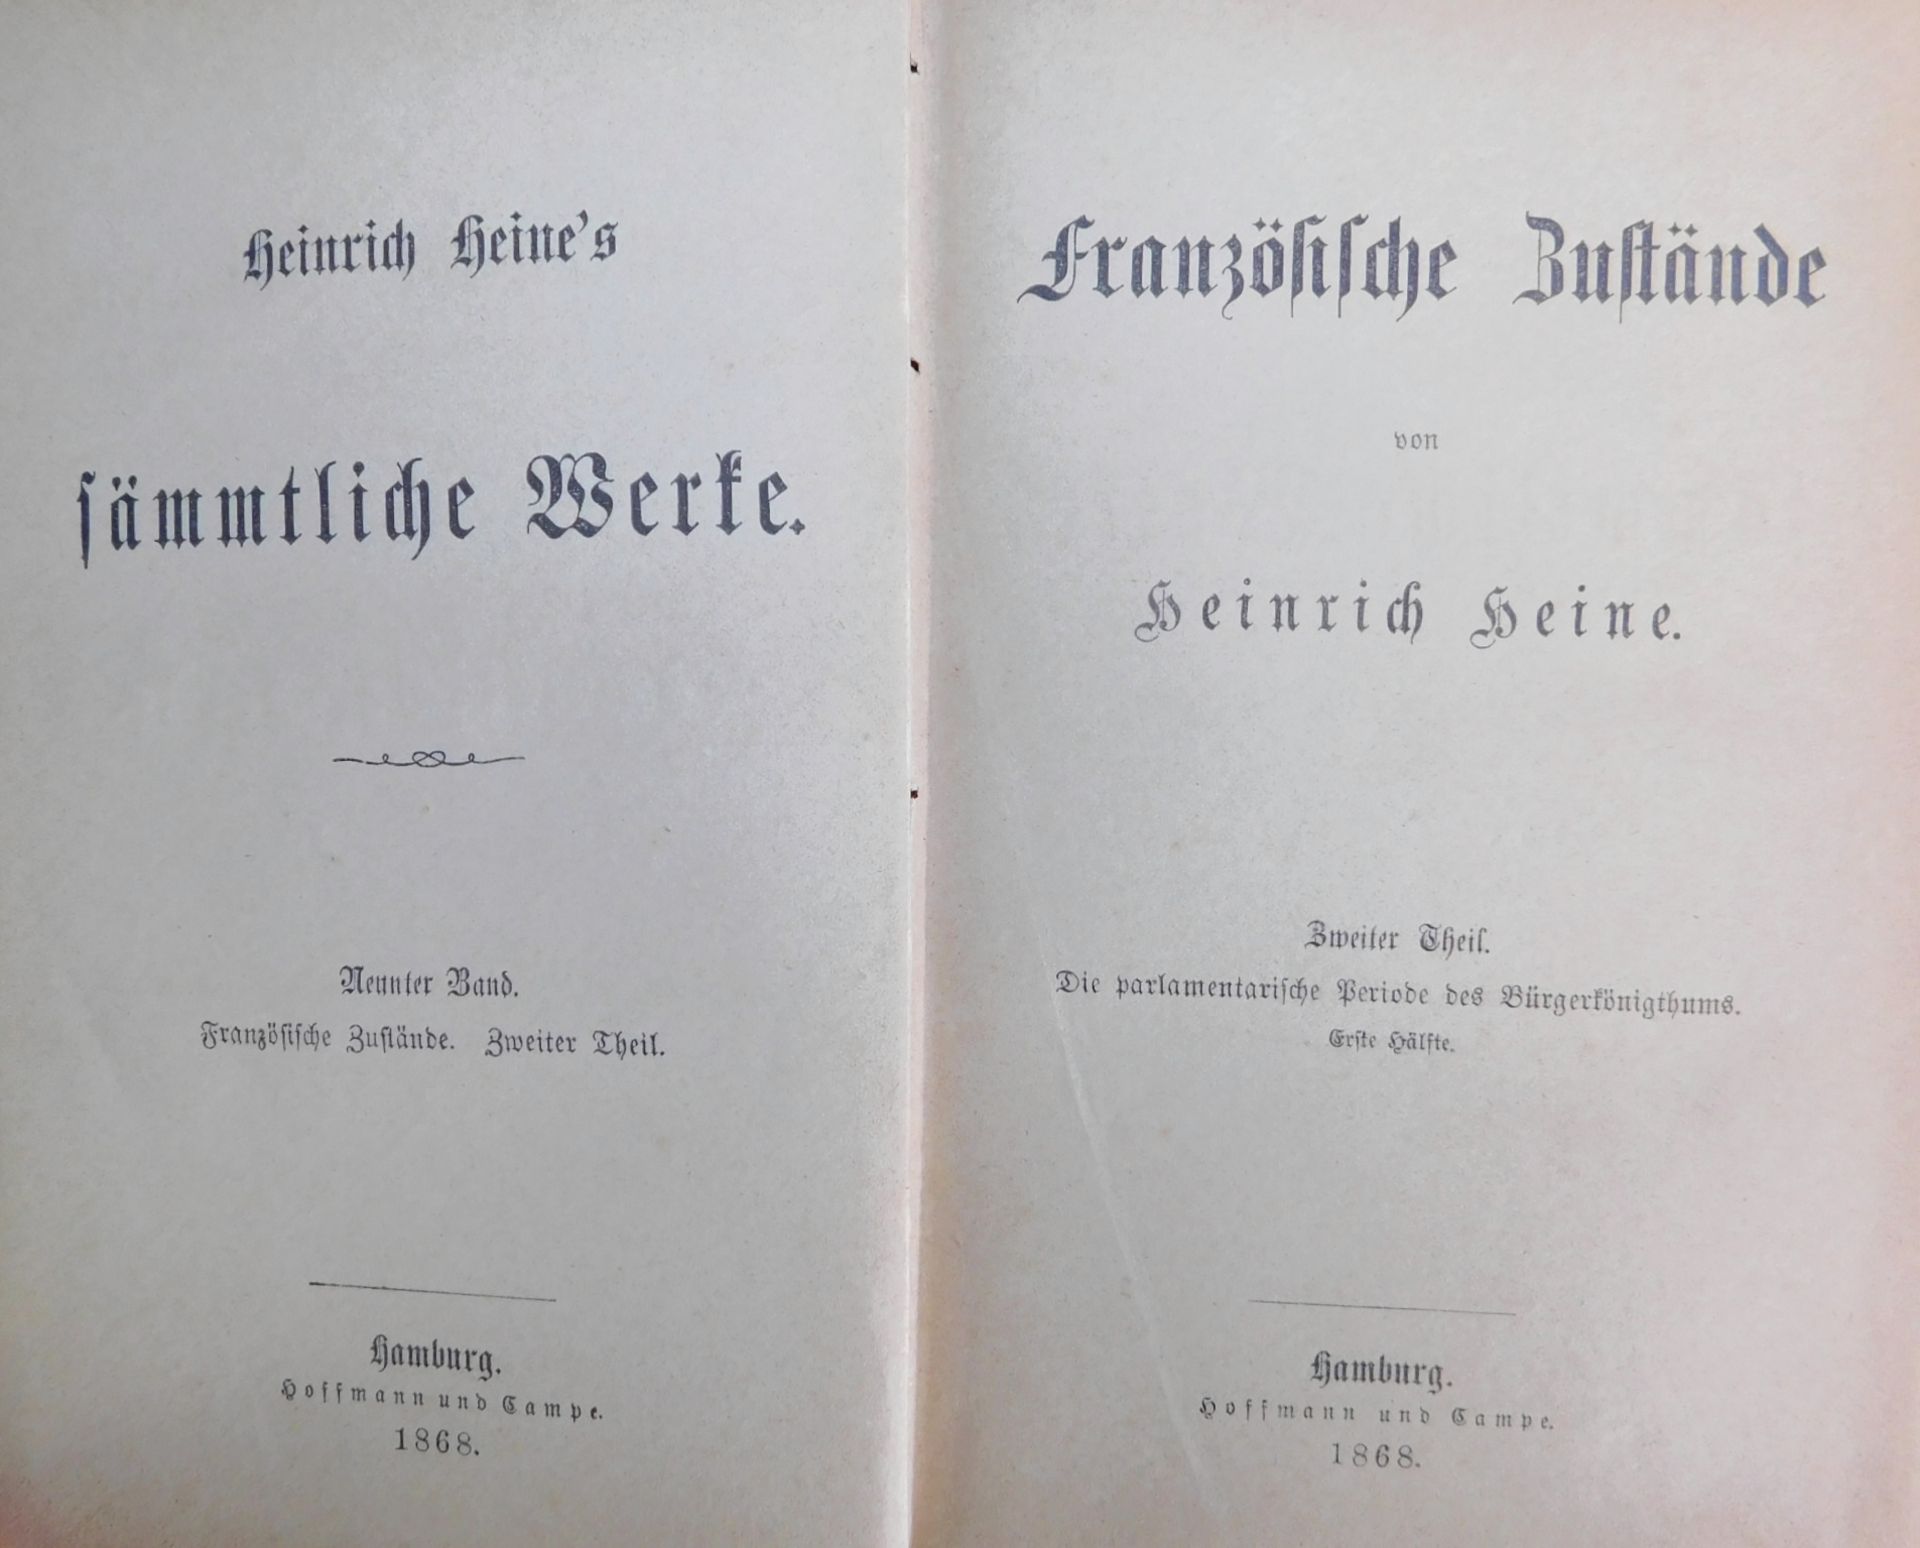 Heinrich Heine's Gesammelte Werke, Hoffmann & Campe, Hamburg 1868, 17 Bände - Image 2 of 2